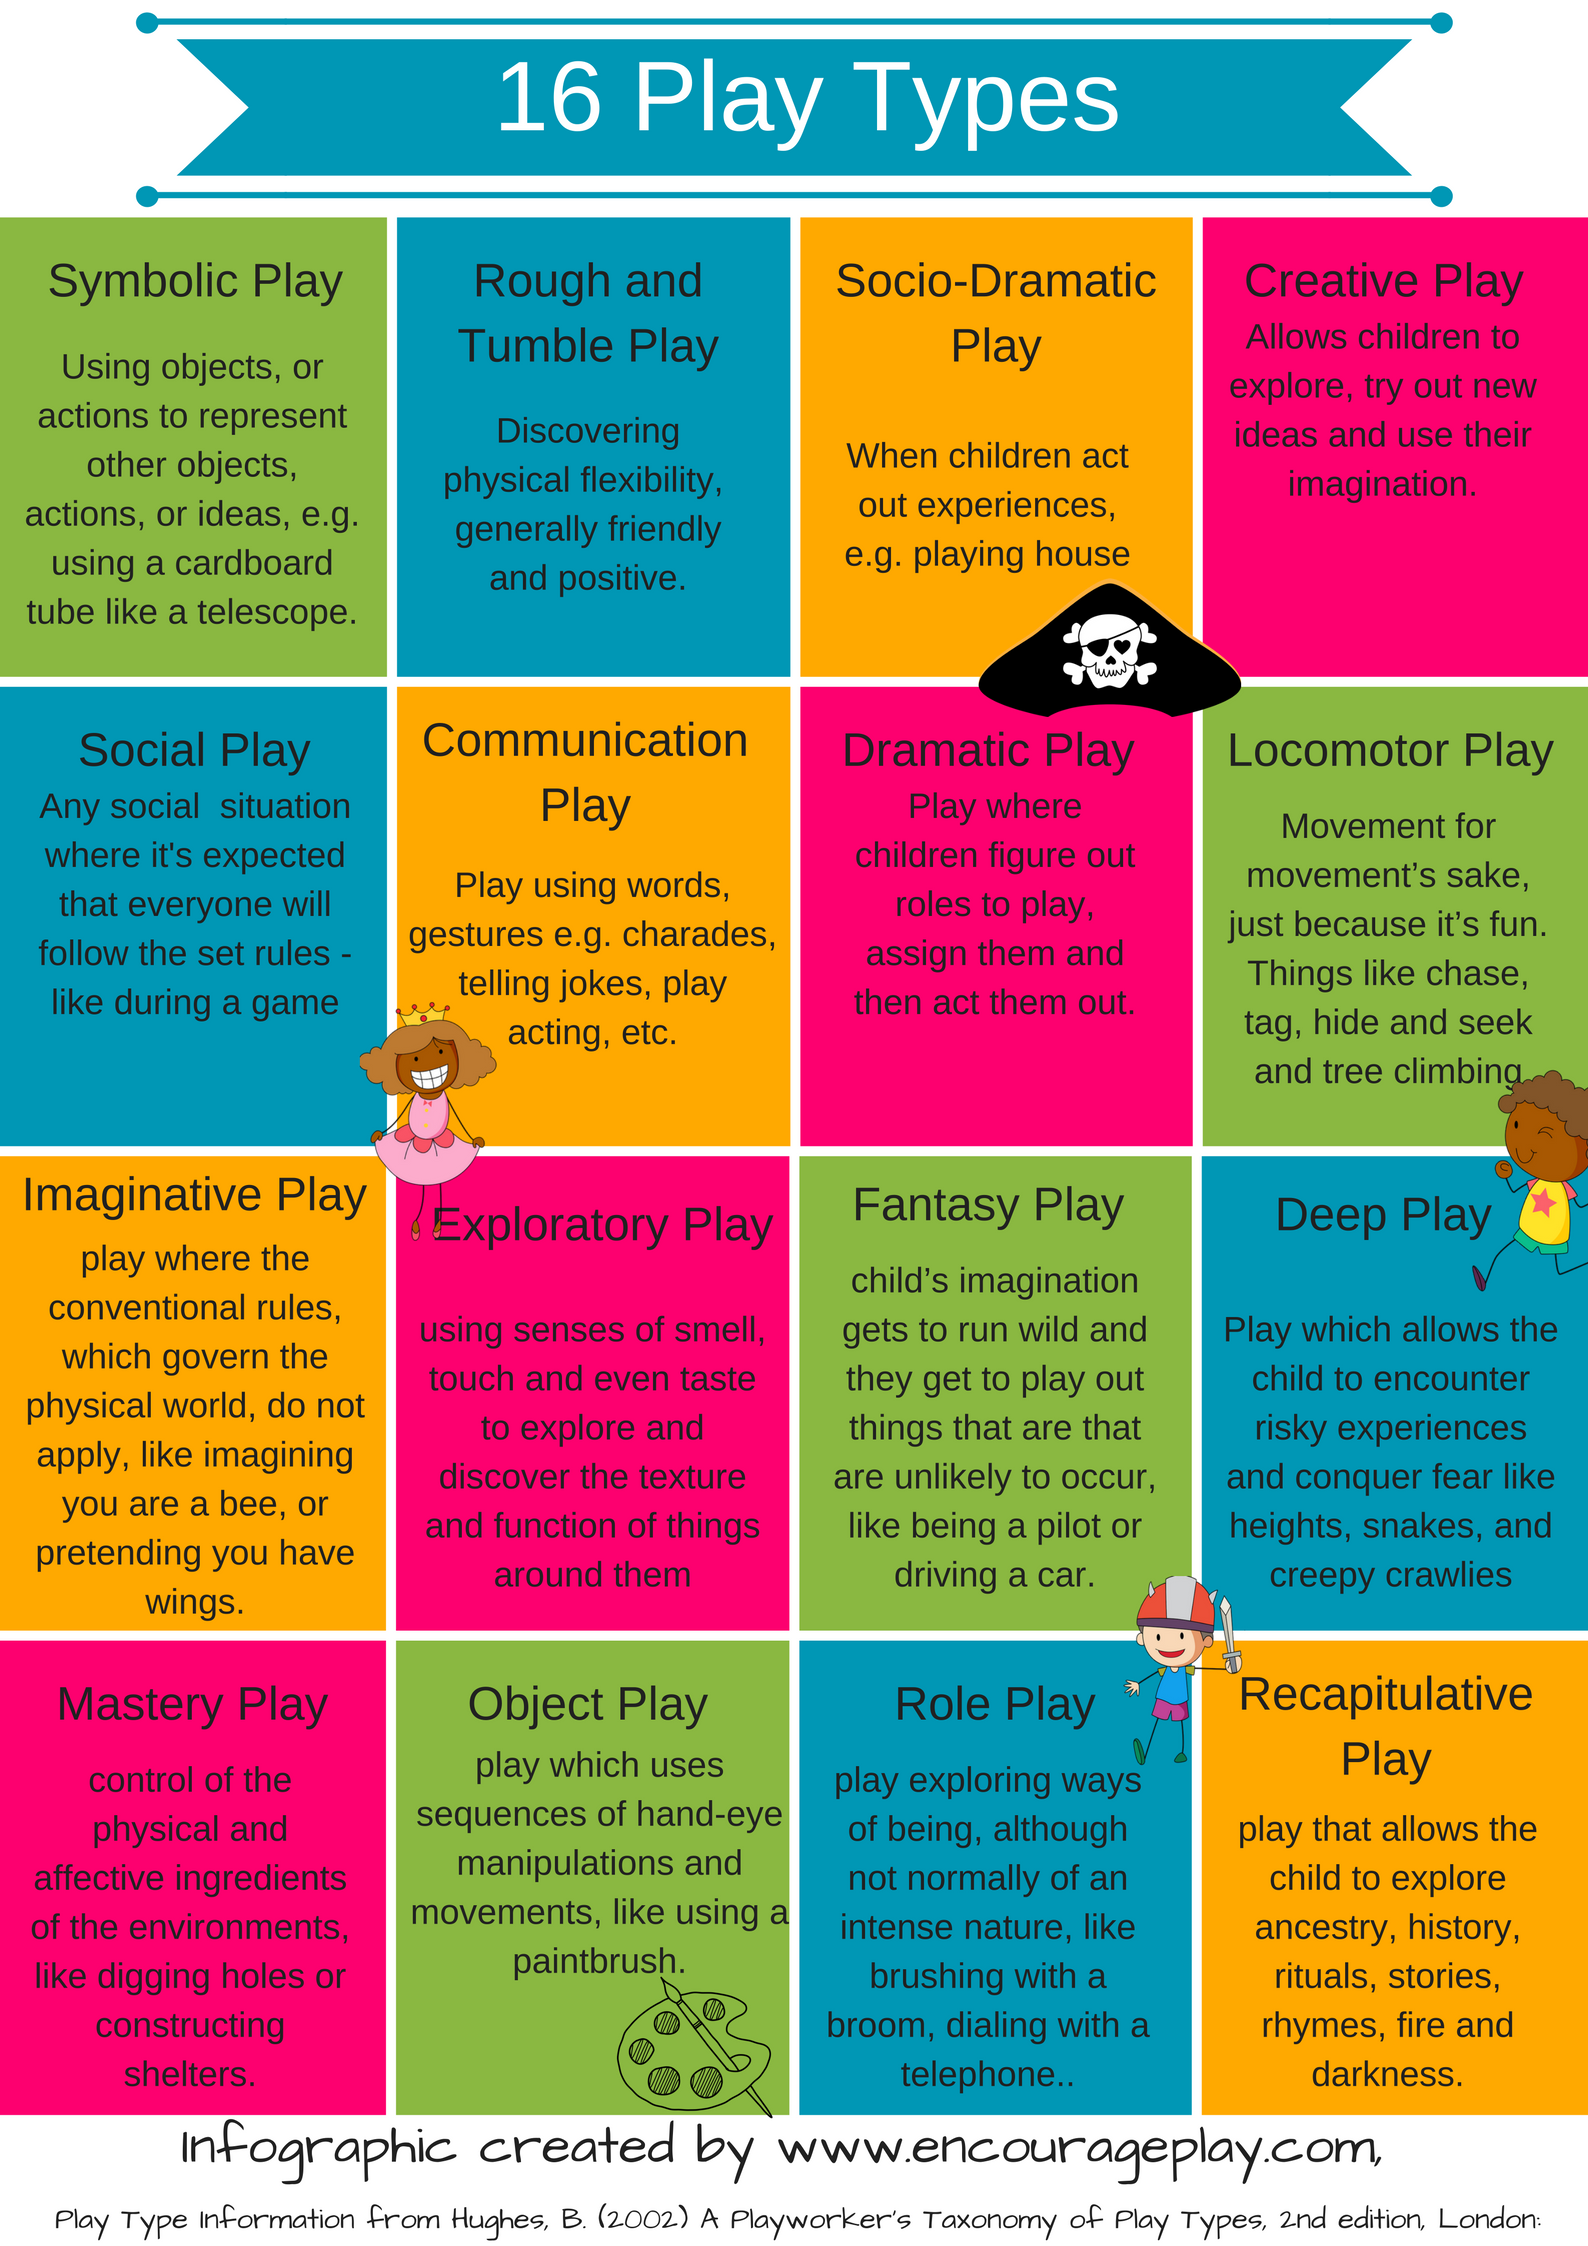 Creative play & activities for children